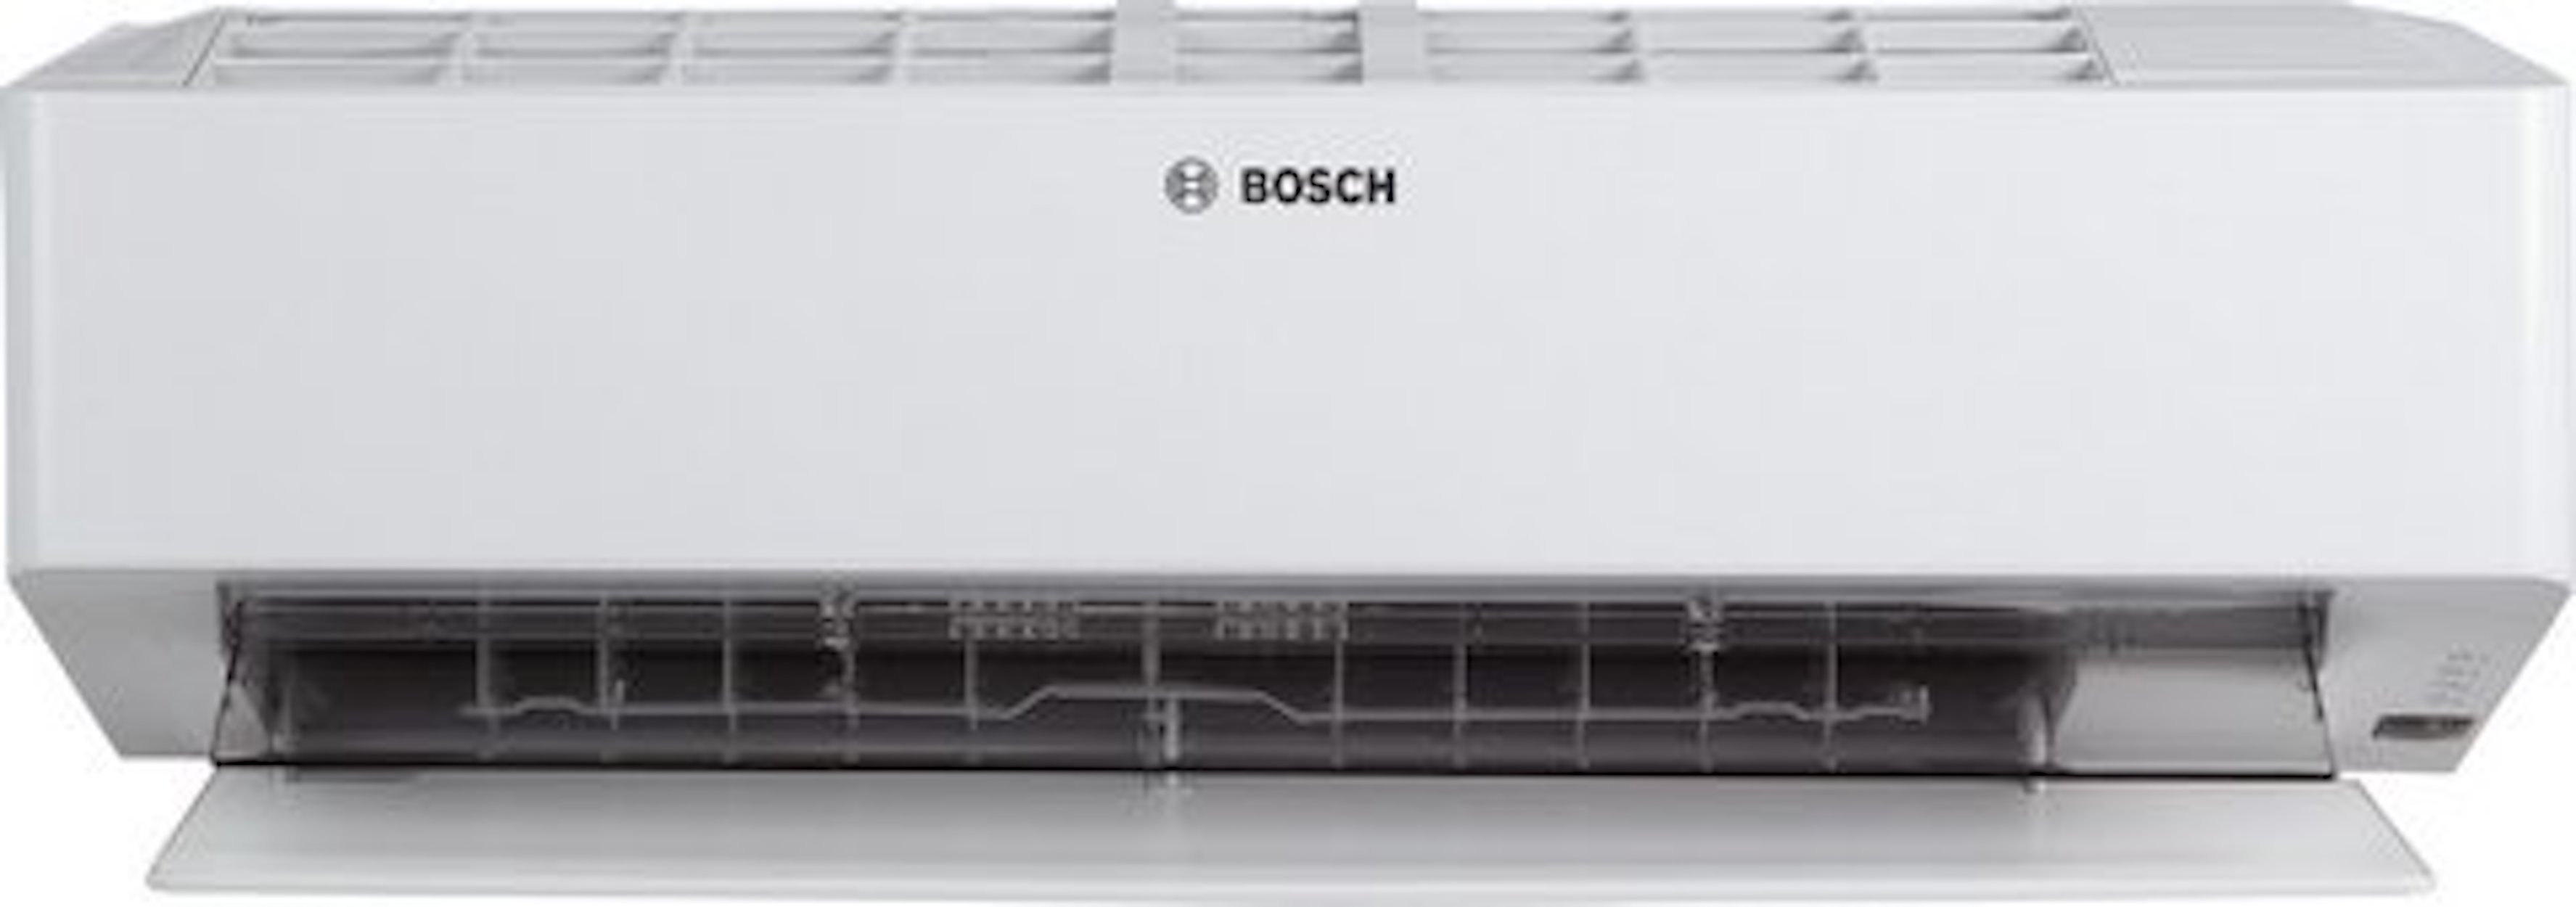 BOSCH Klimagerät CL6000i-W 25 E, Split Inneneinheit, 2,5 kW, Coanda Air Flow